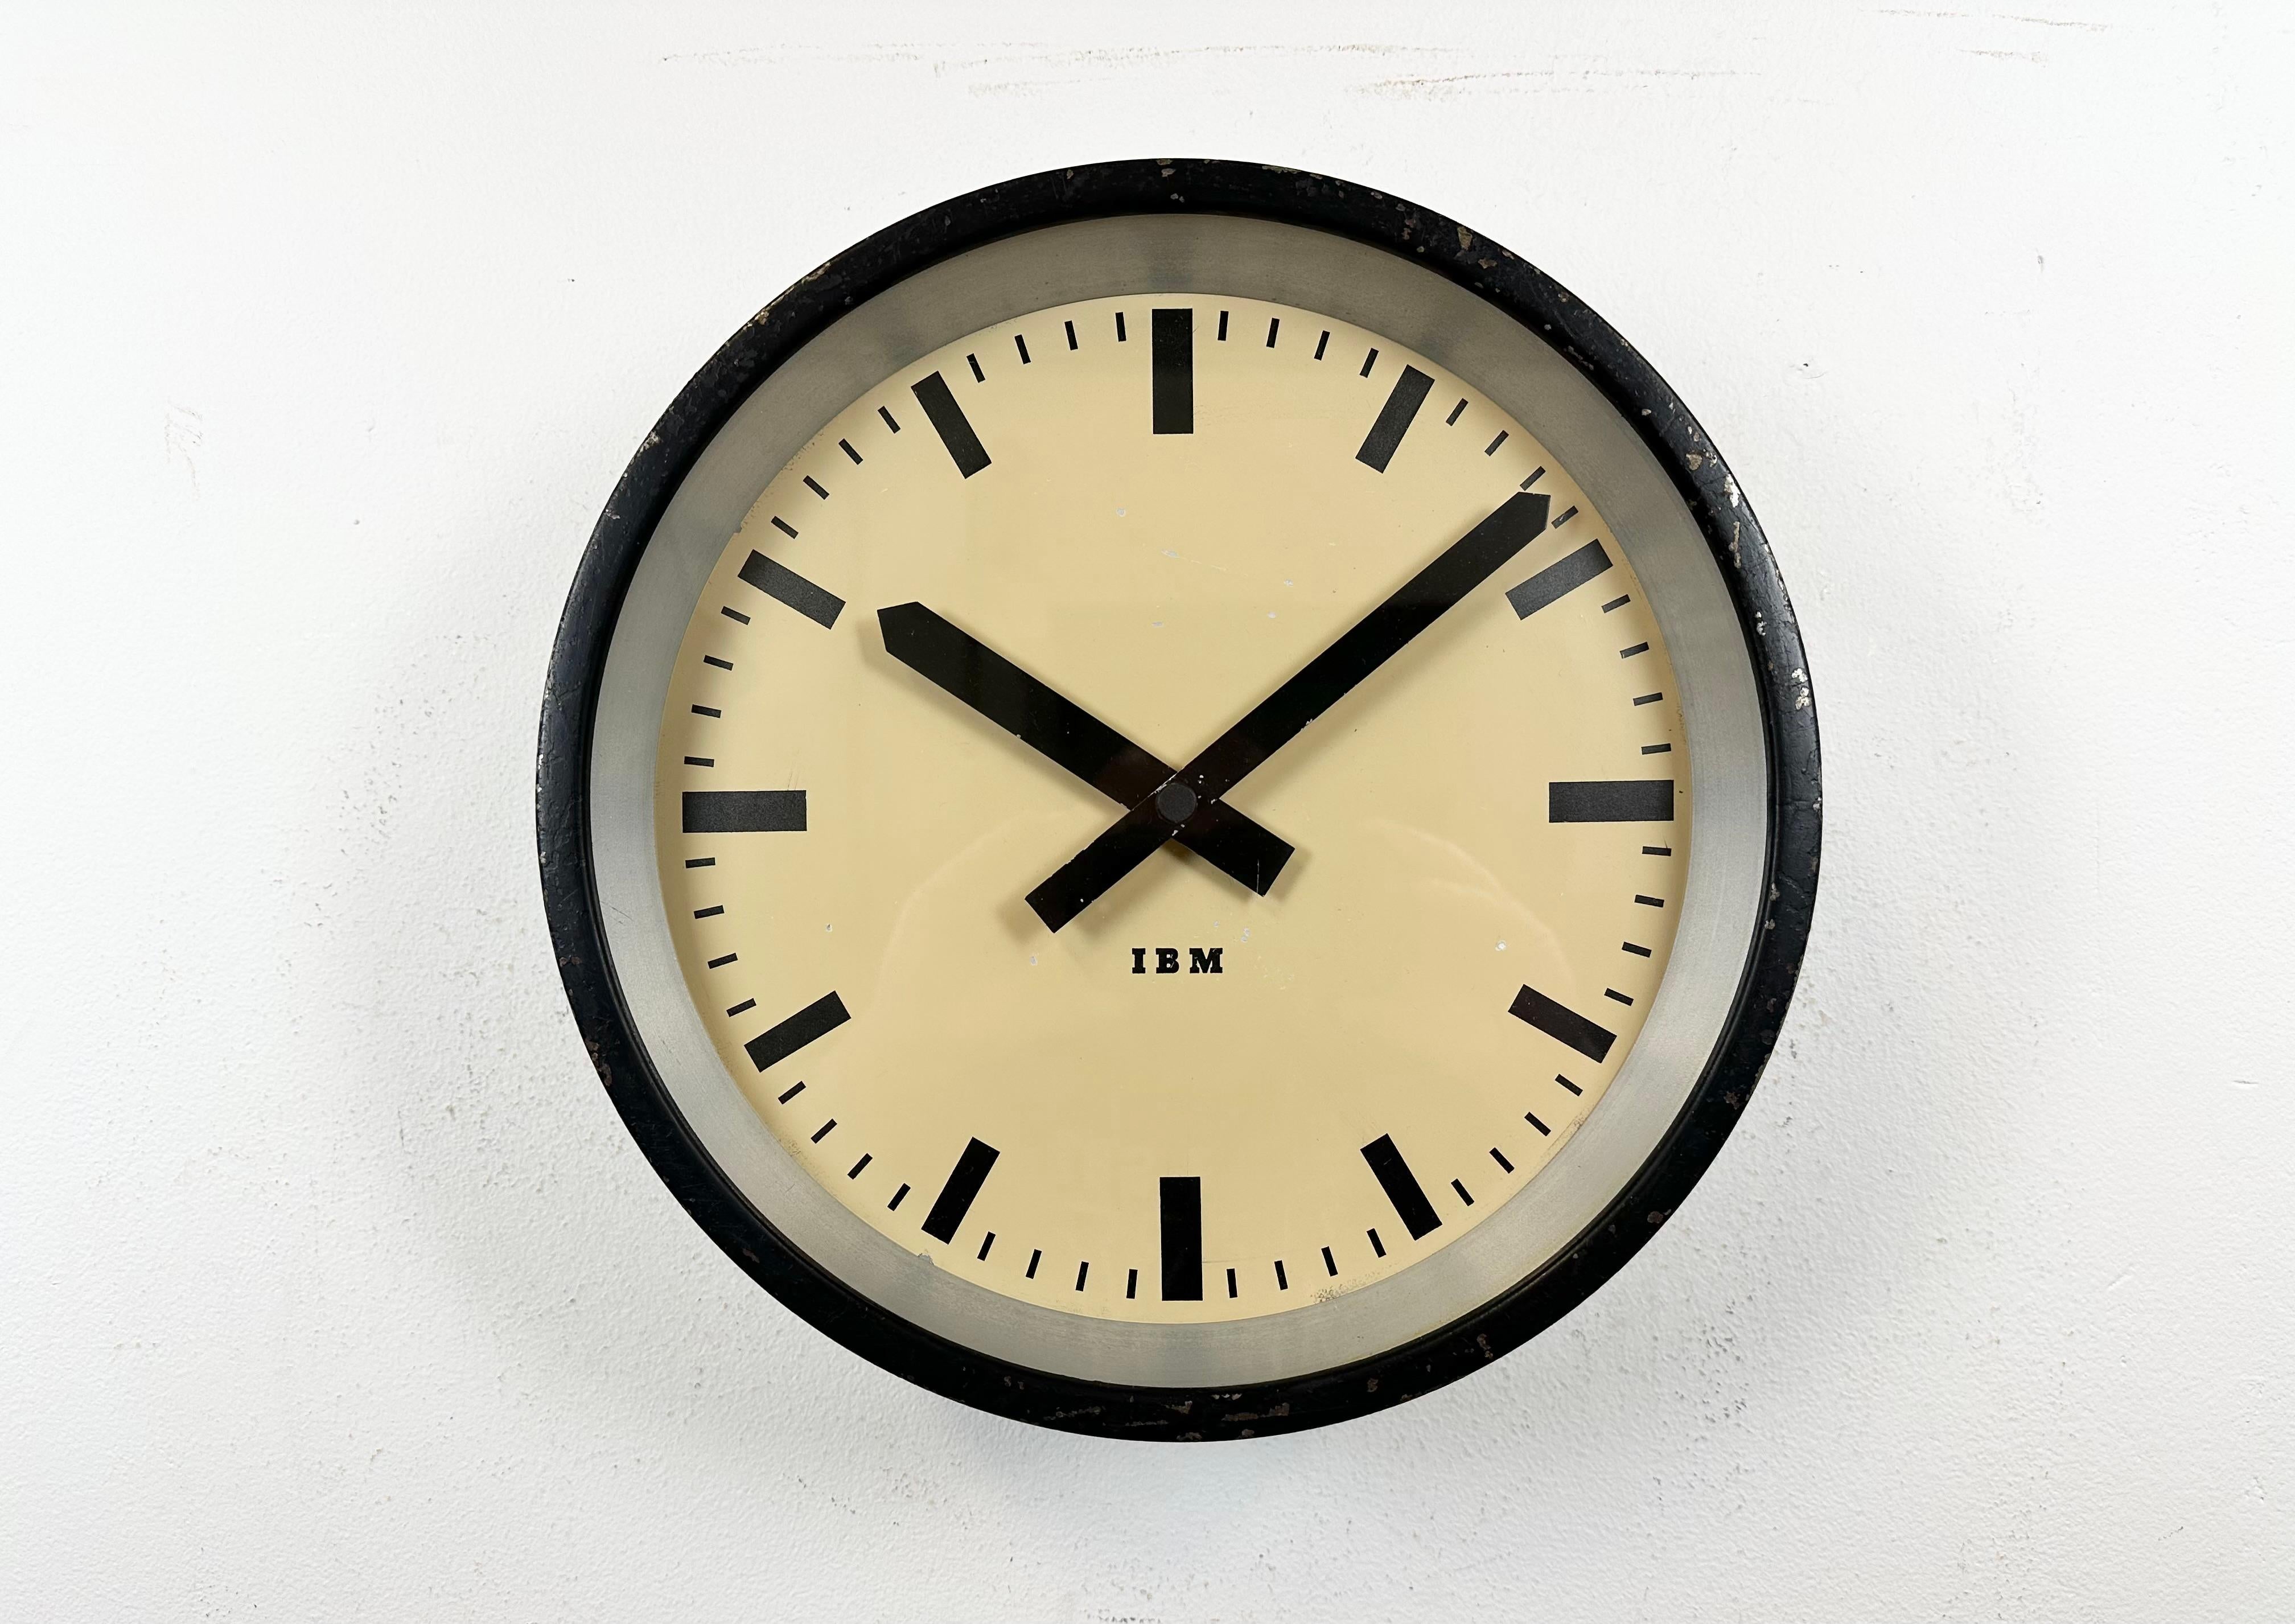 
Cette horloge murale a été produite par IBM aux États-Unis dans les années 1950. Elle présente un cadre en métal noir, un cadran en fer, des aiguilles en aluminium et un couvercle en verre transparent. La pièce a été convertie en un mécanisme